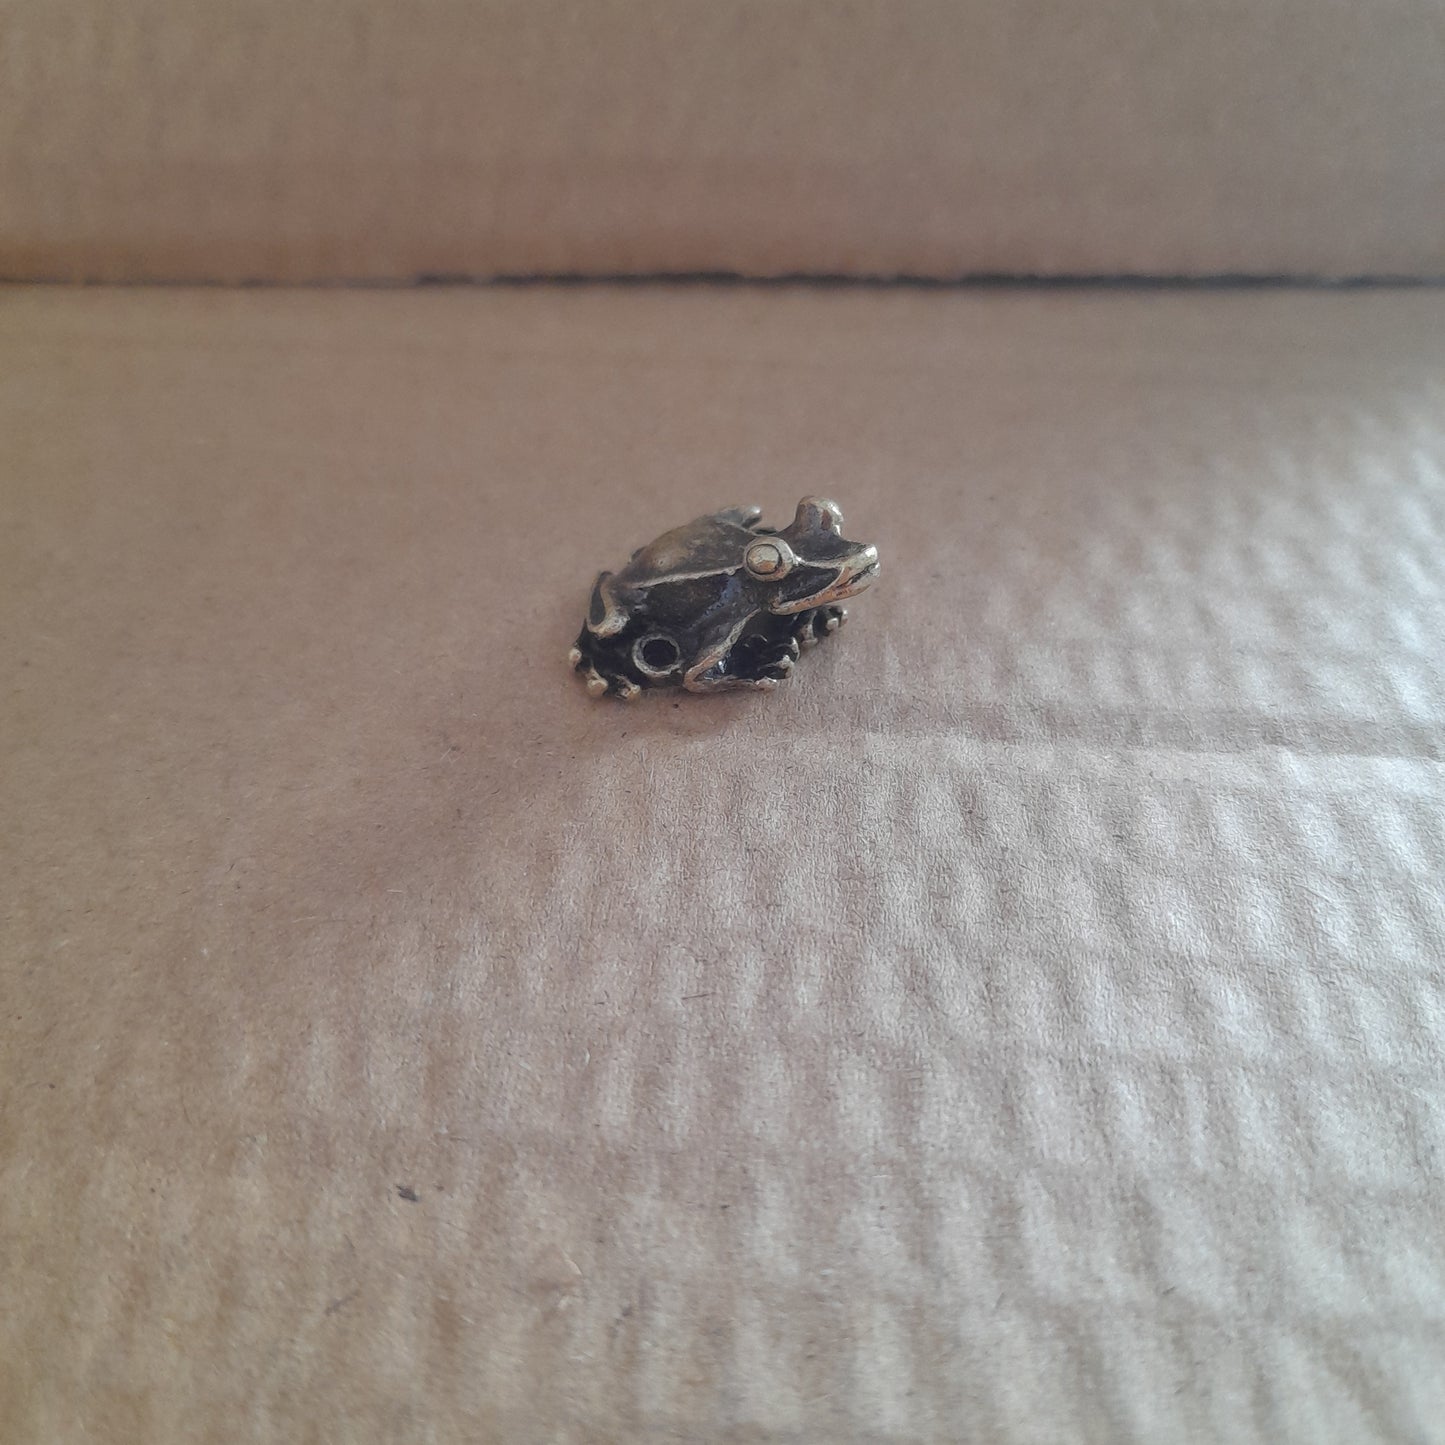 Miniture Frog incense holder